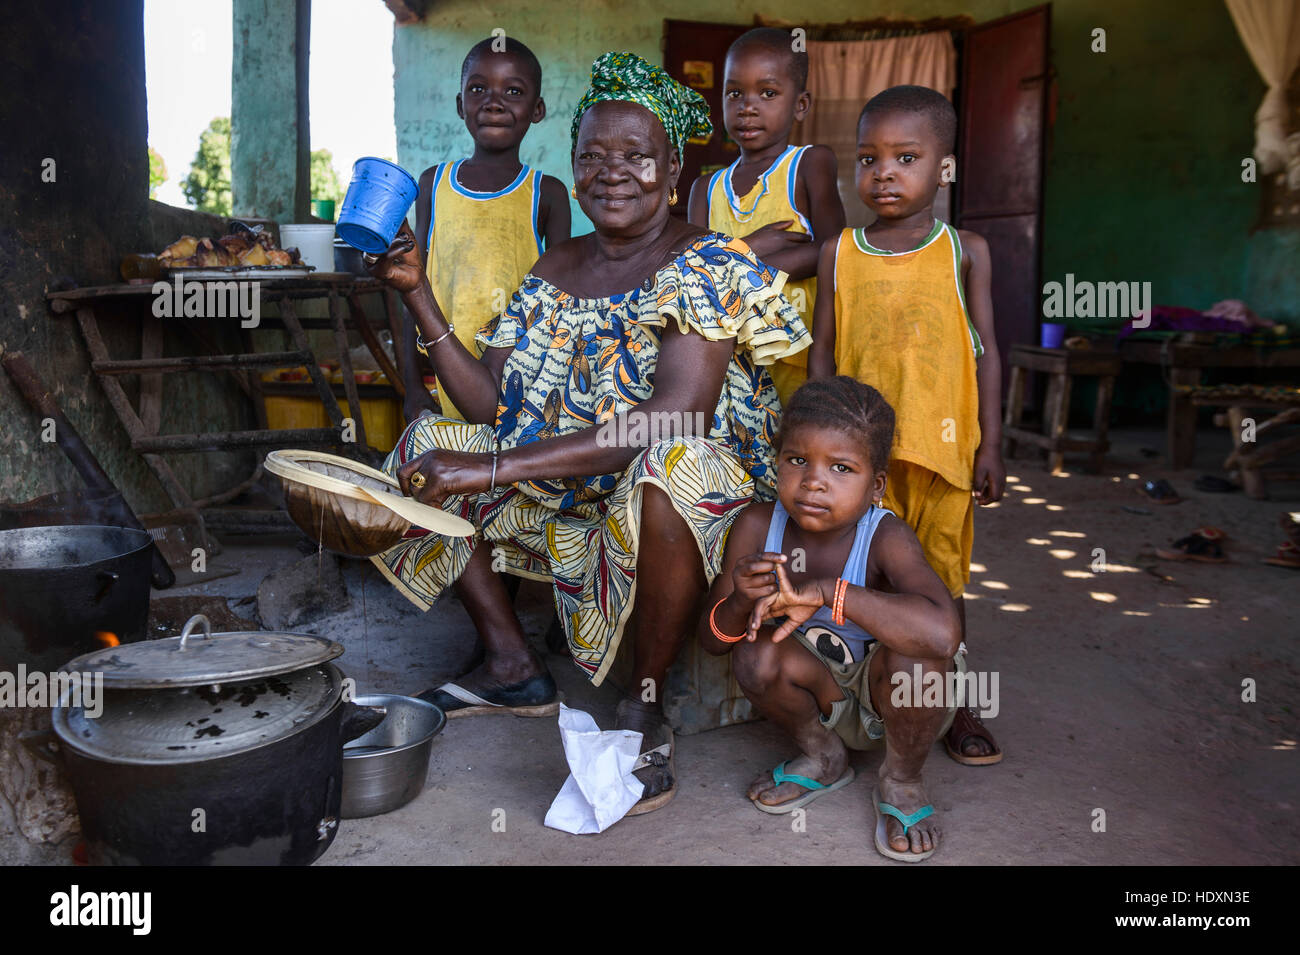 Mandinka grandmother and grandchildren, The Gambia Stock Photo